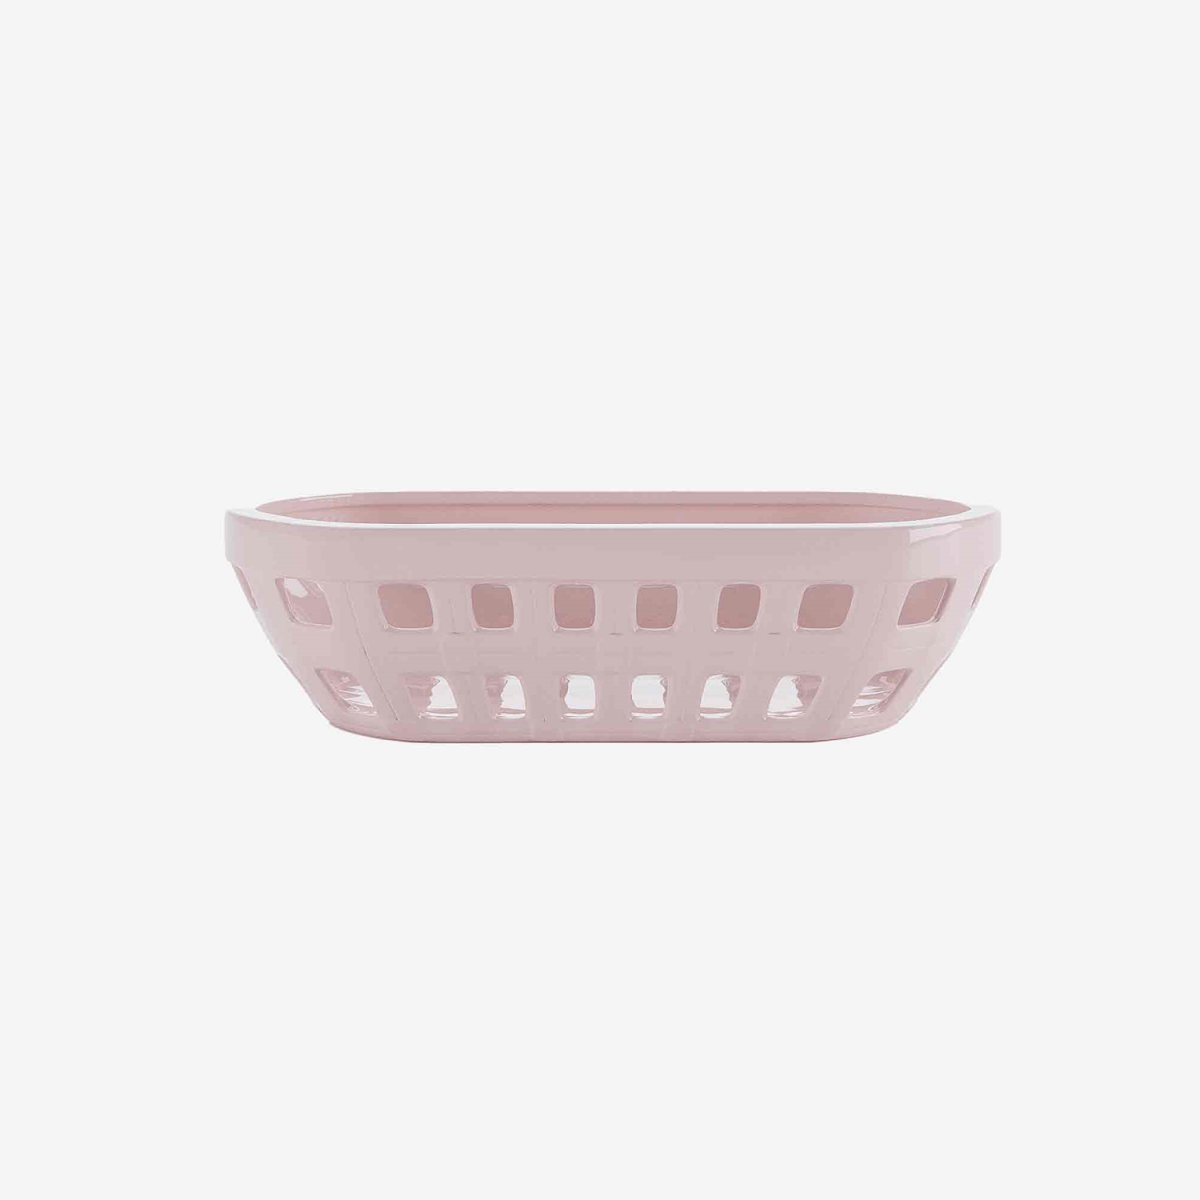 Corbeille vide-poches en céramique rose, un objet art déco design de style vintage pour la cuisine ou à poser sur un meuble - Potiron Paris, site de déco pas cher